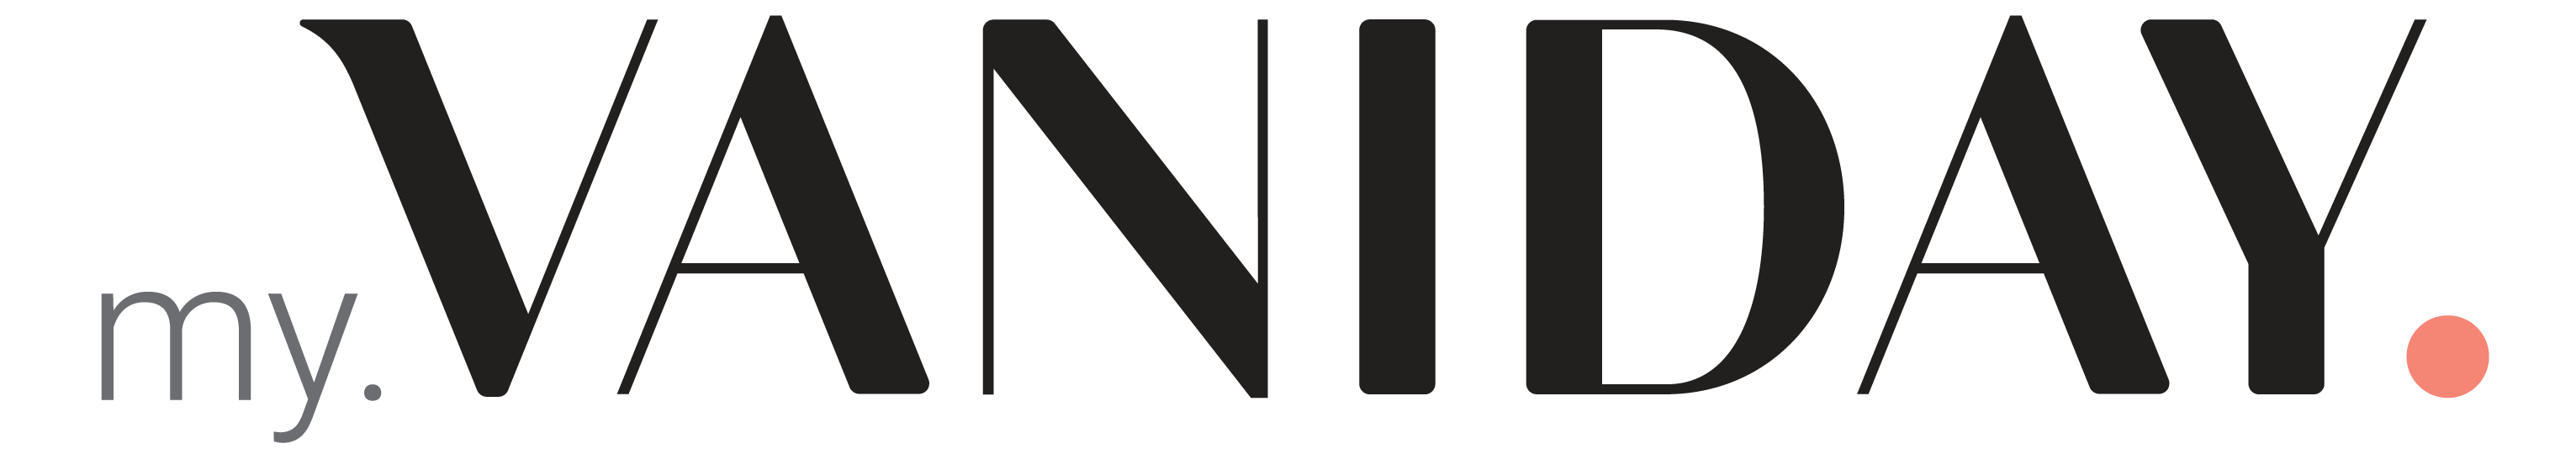 vaniday-seller-login-logo